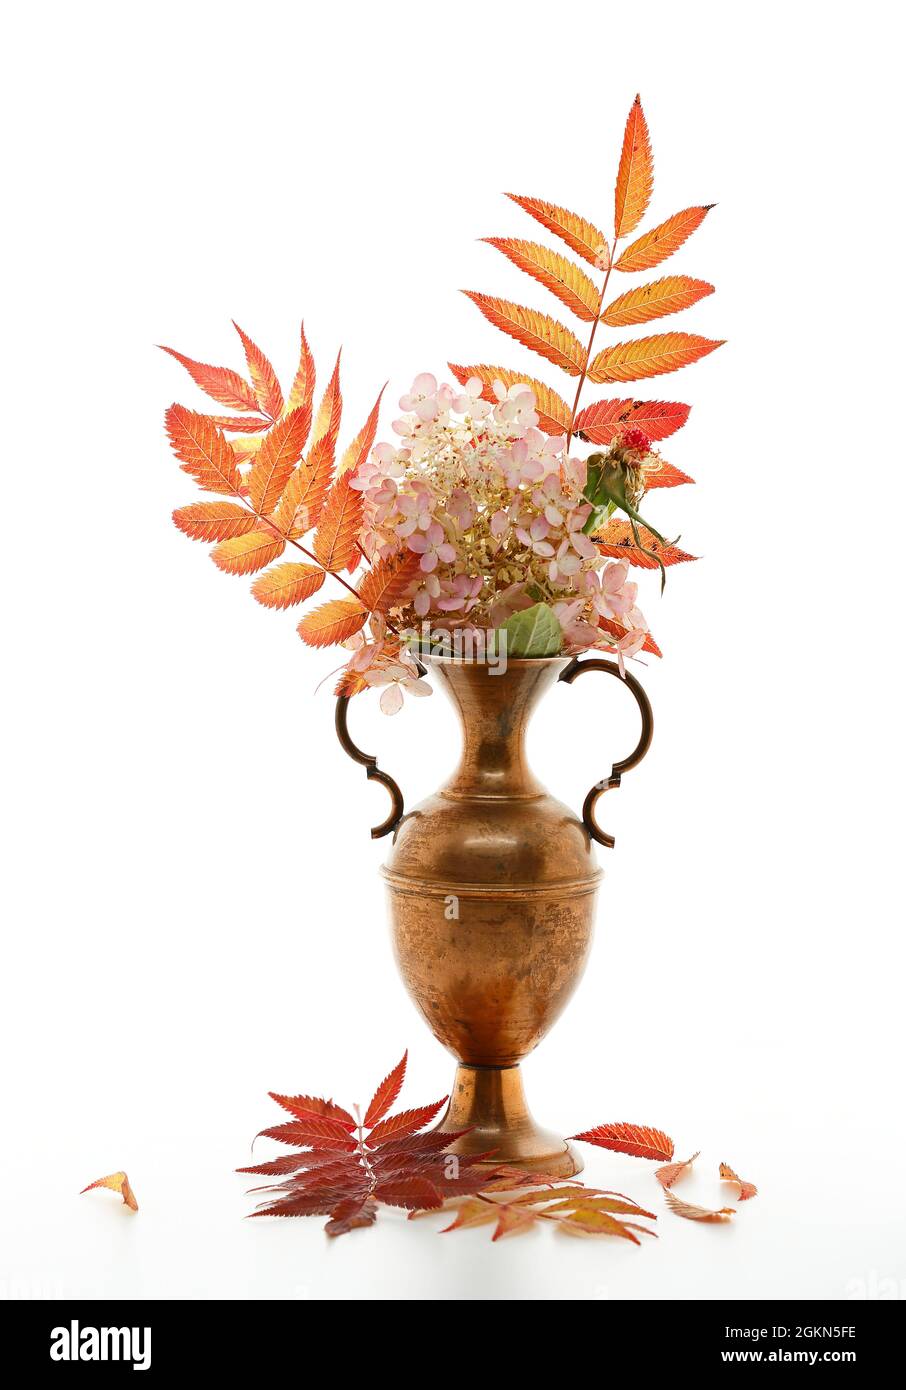 Composizione autunnale con foglie arancioni e rosse e fiori di ortangea in anfora di ottone Foto Stock